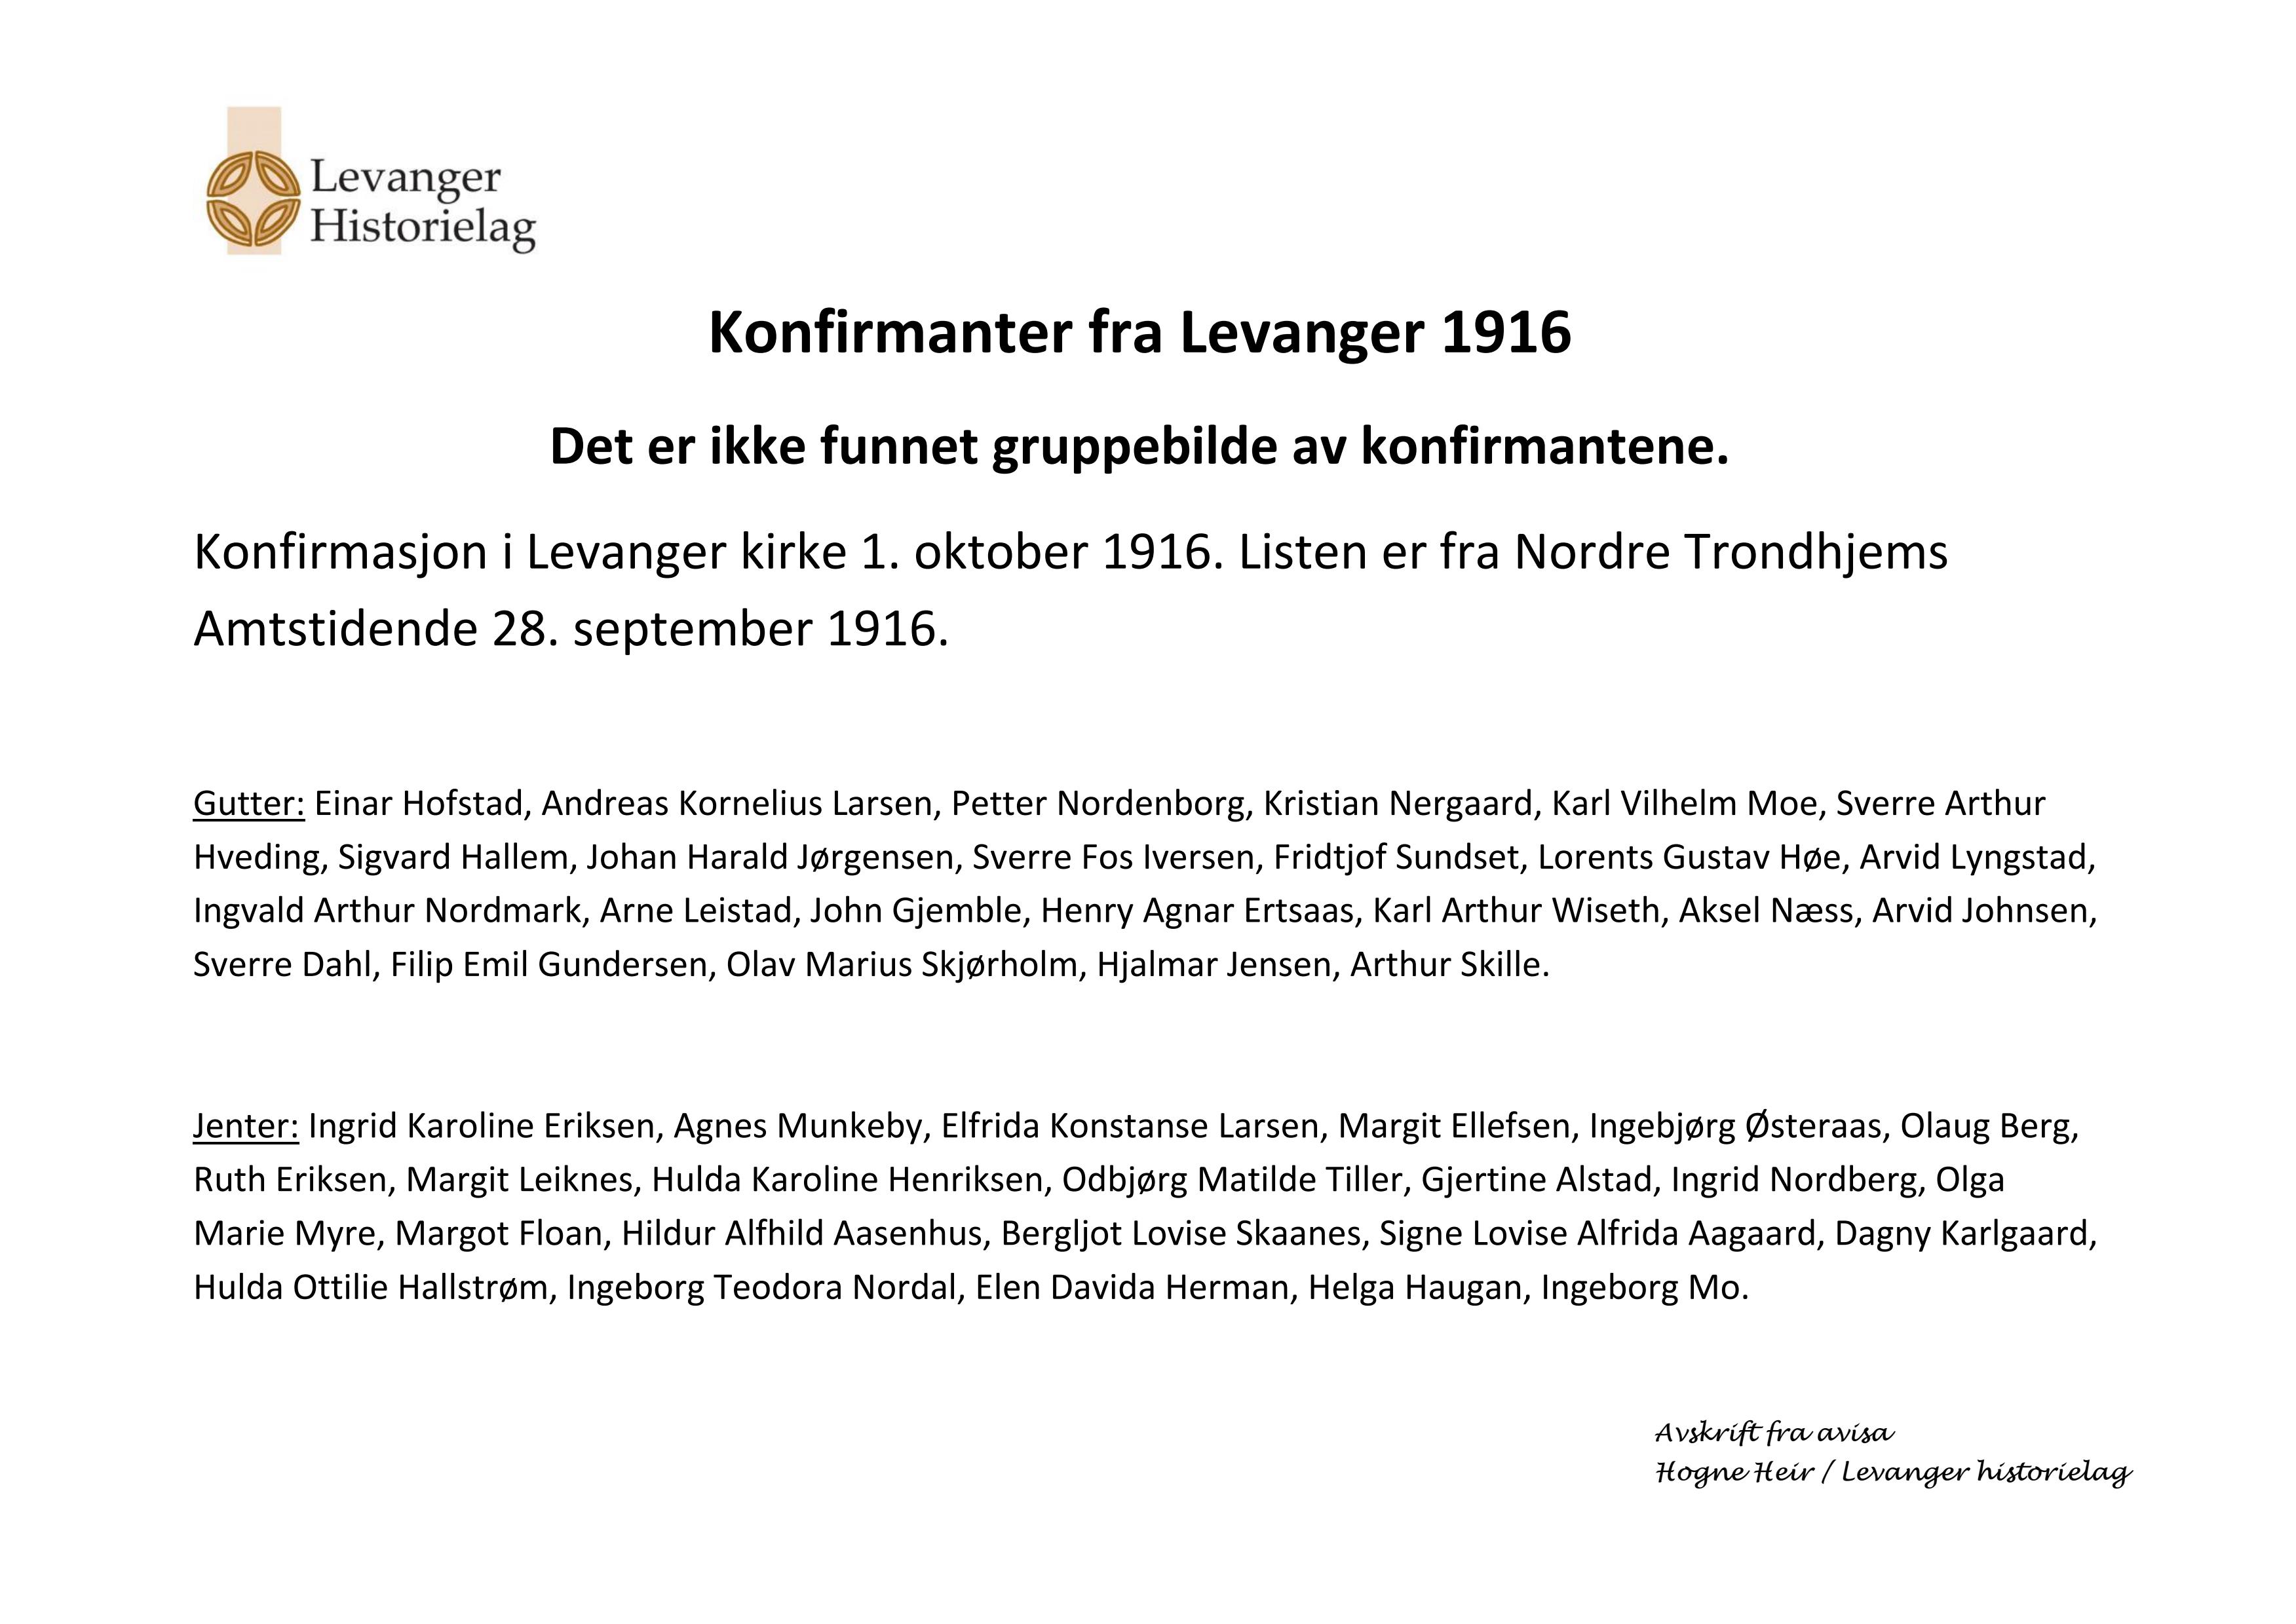 Konfirmanter fra Levanger i Levanger kirke 1. oktober 1916 - navneliste